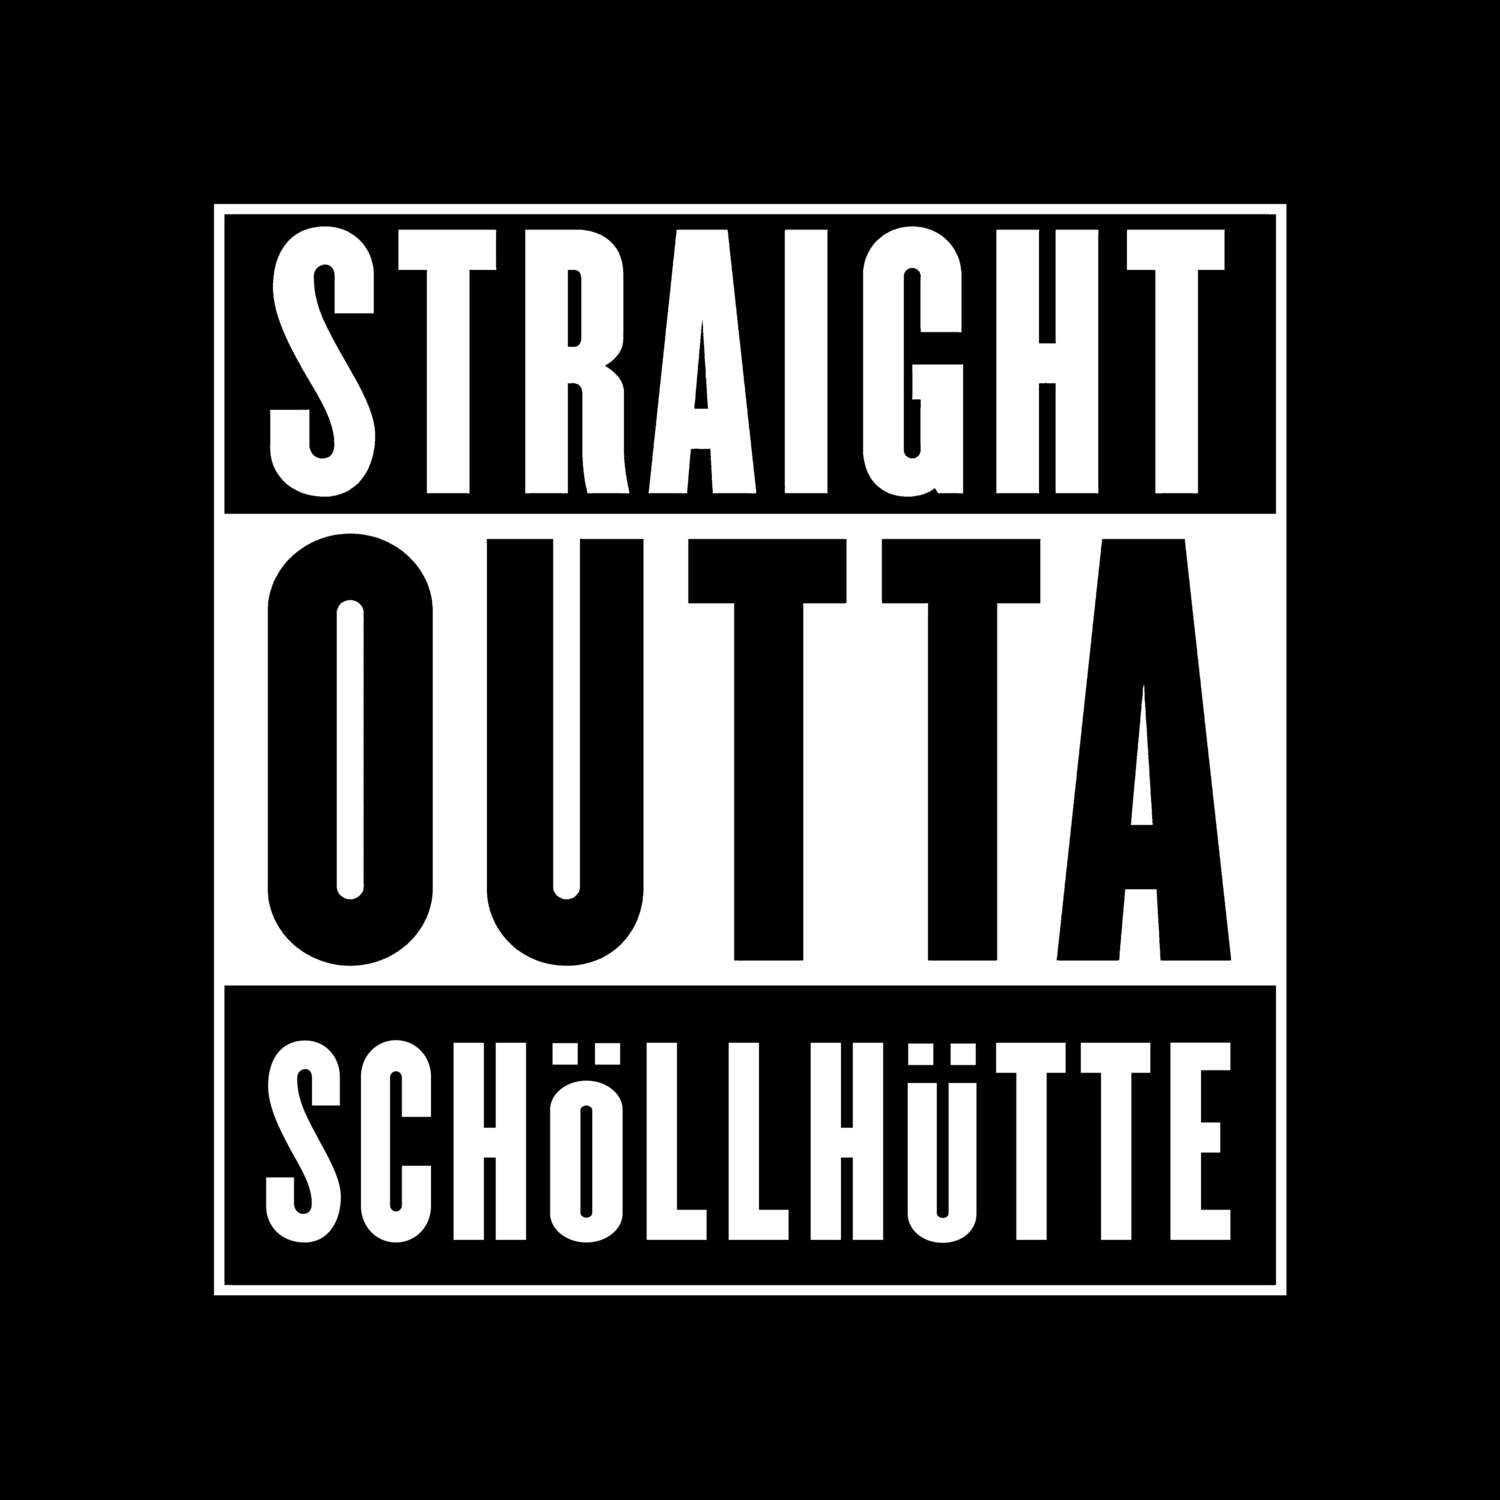 Schöllhütte T-Shirt »Straight Outta«